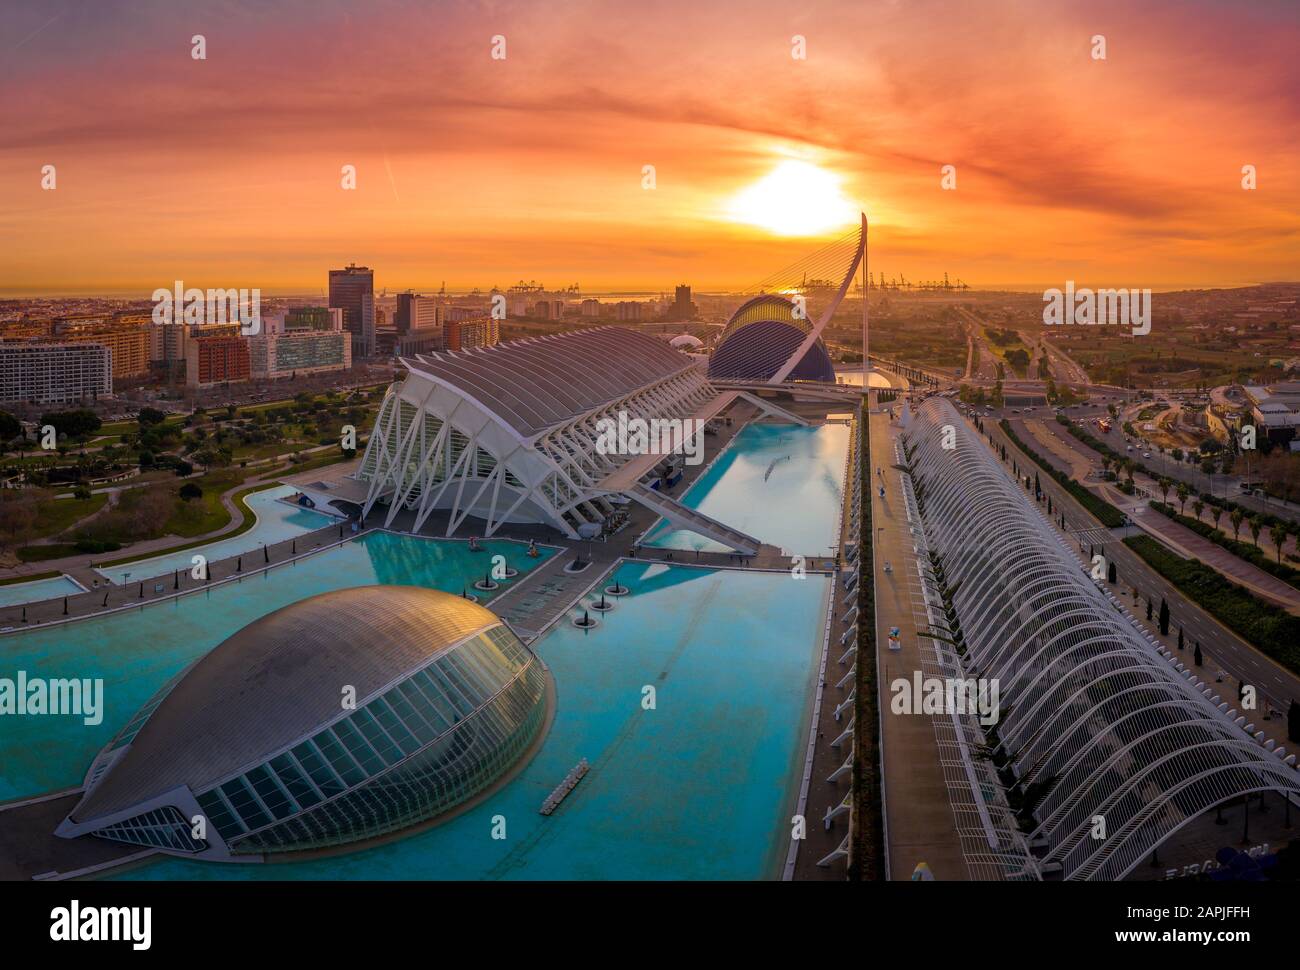 Veduta aerea dell'alba della città o delle arti e delle scienze a Valencia Spagna con il planetario Henisferic, il centro scientifico Prince Philip e l'Agora Foto Stock